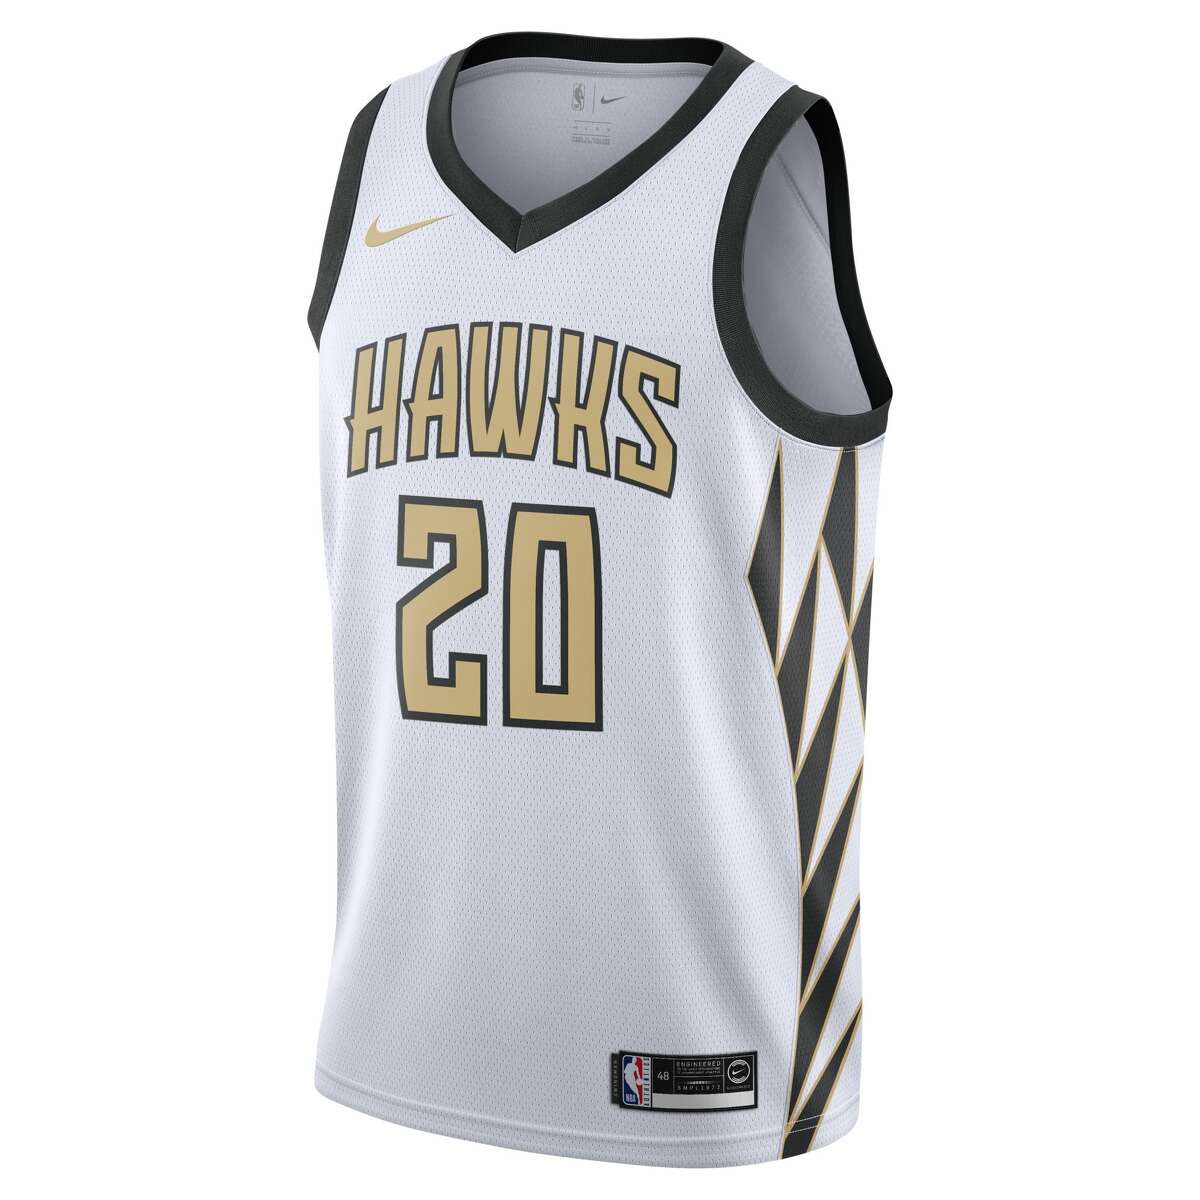 The Atlanta Hawks' NBA City Edition jersey for the 2018-19 season.